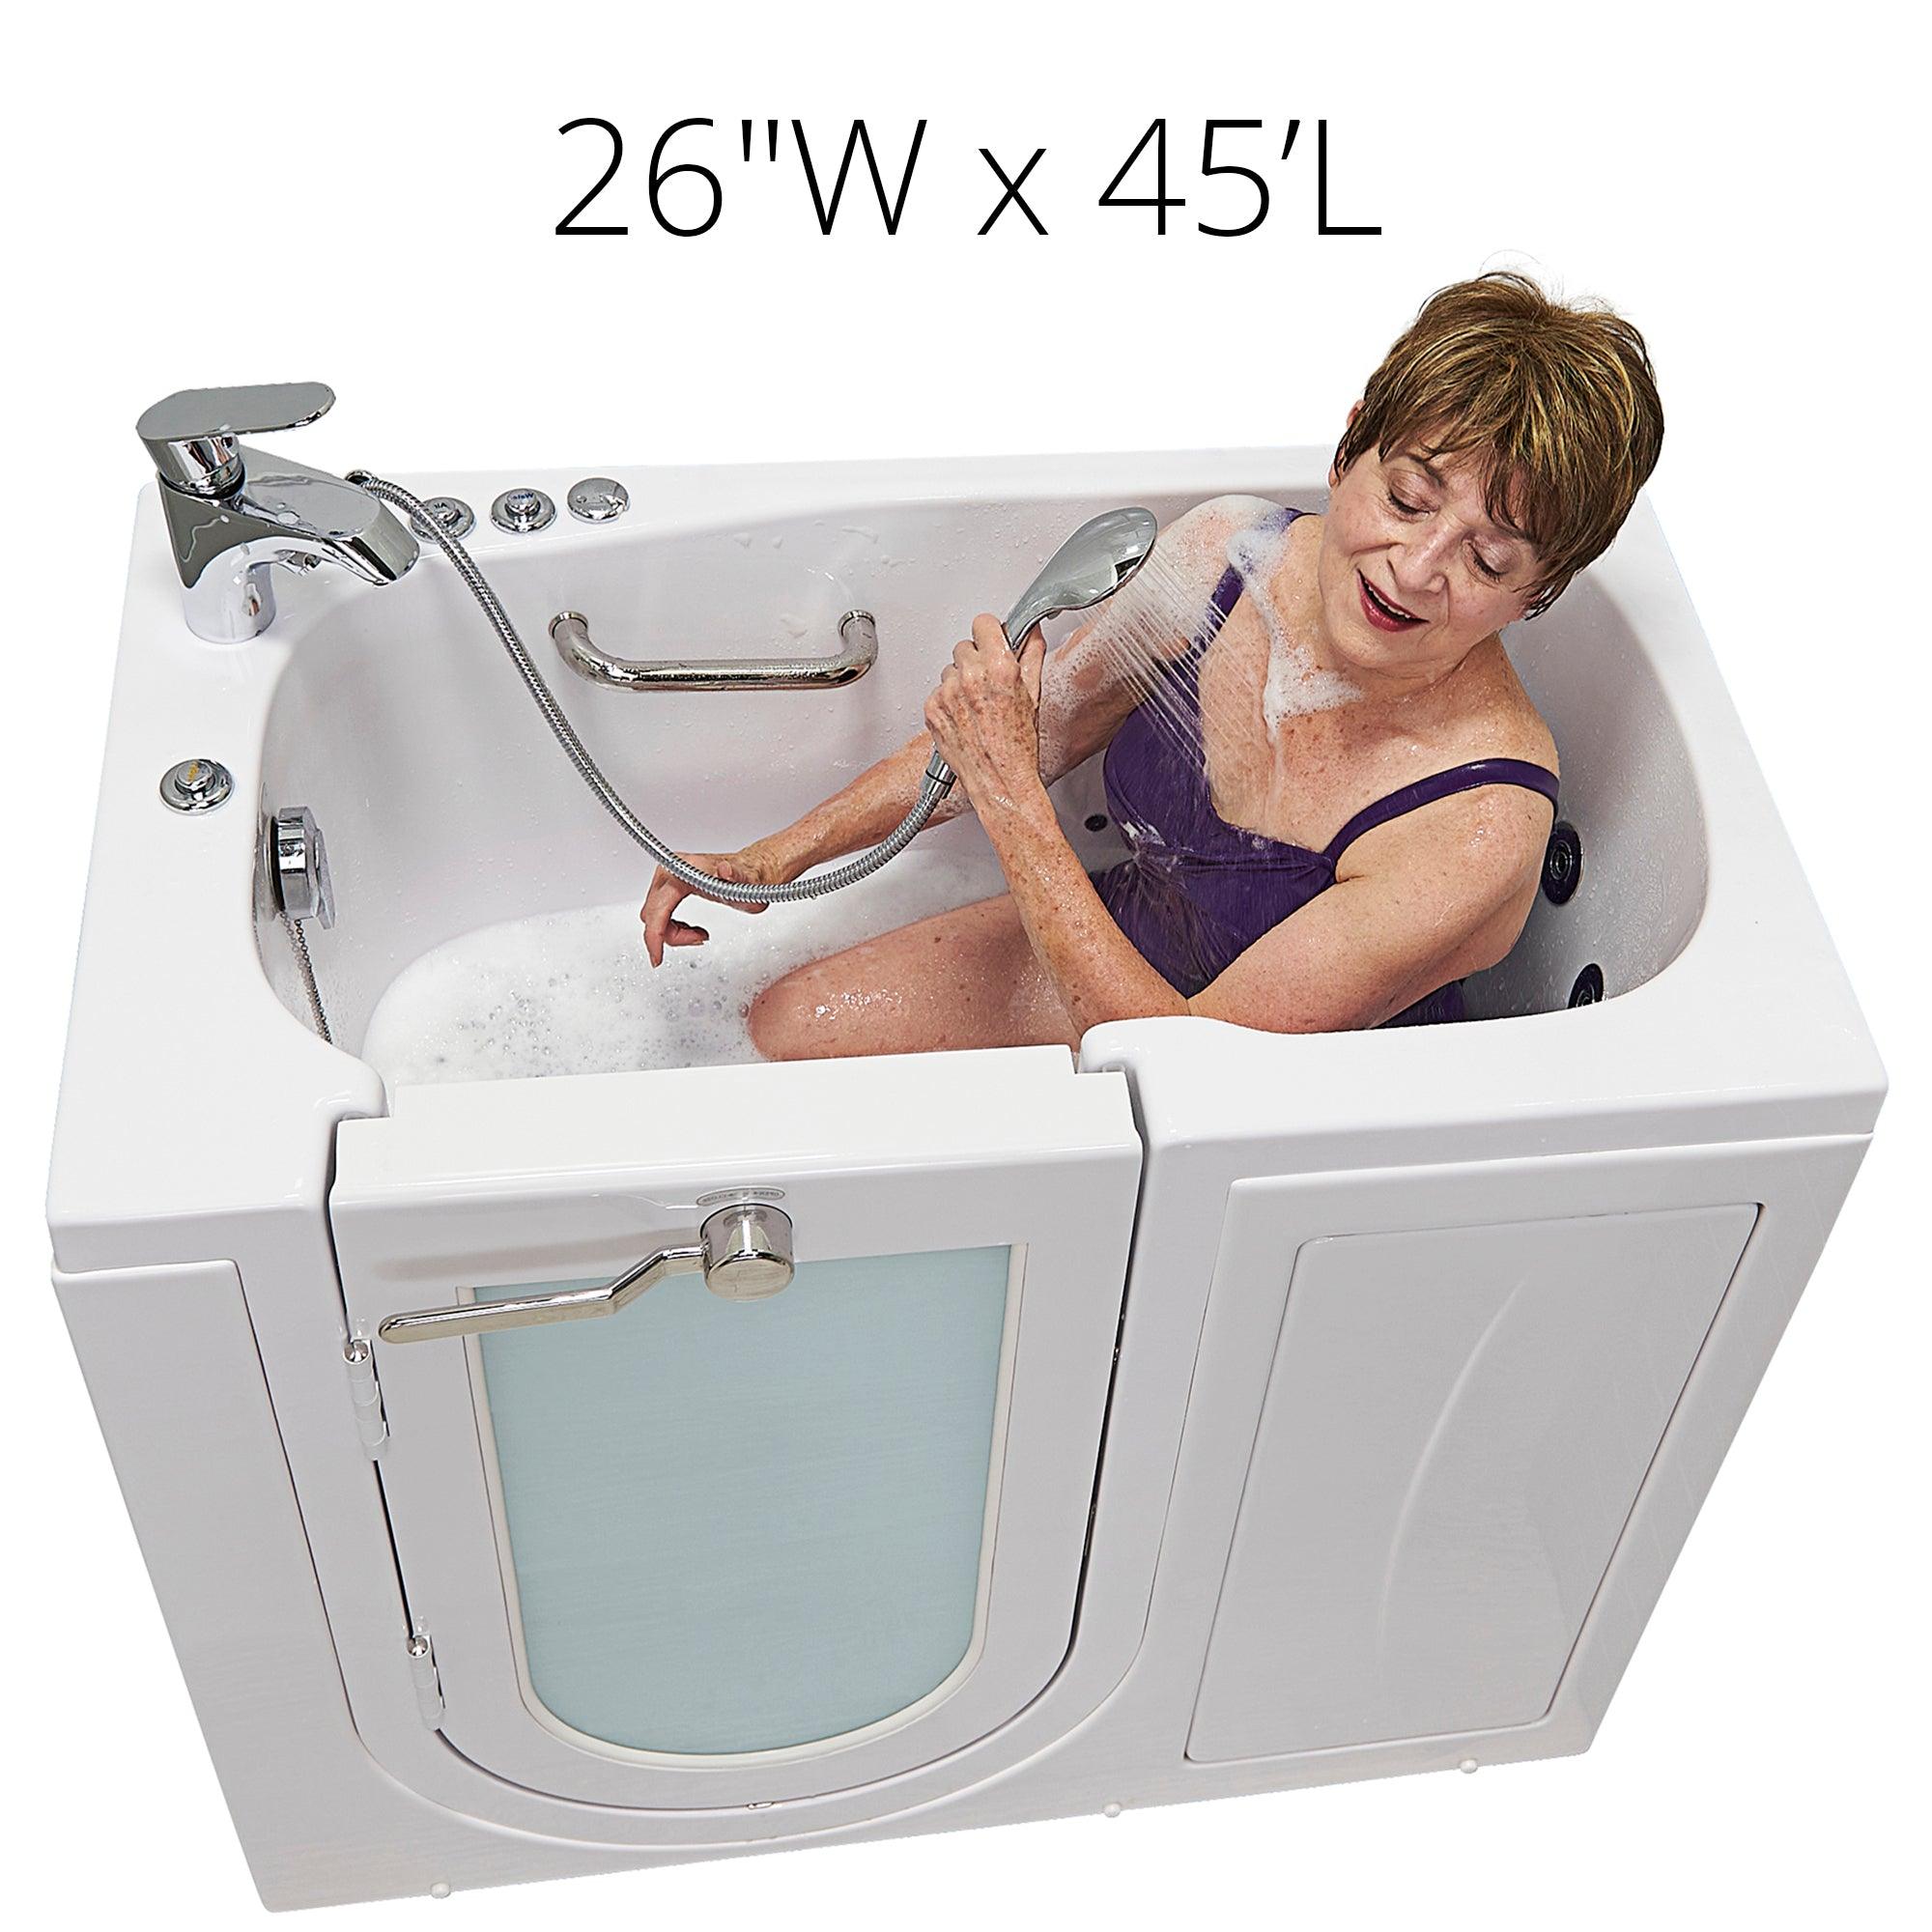 Ella Mobile 26"x45" Acrylic Air and Hydro Massage Walk-In Bathtub - Bathroom Design Center